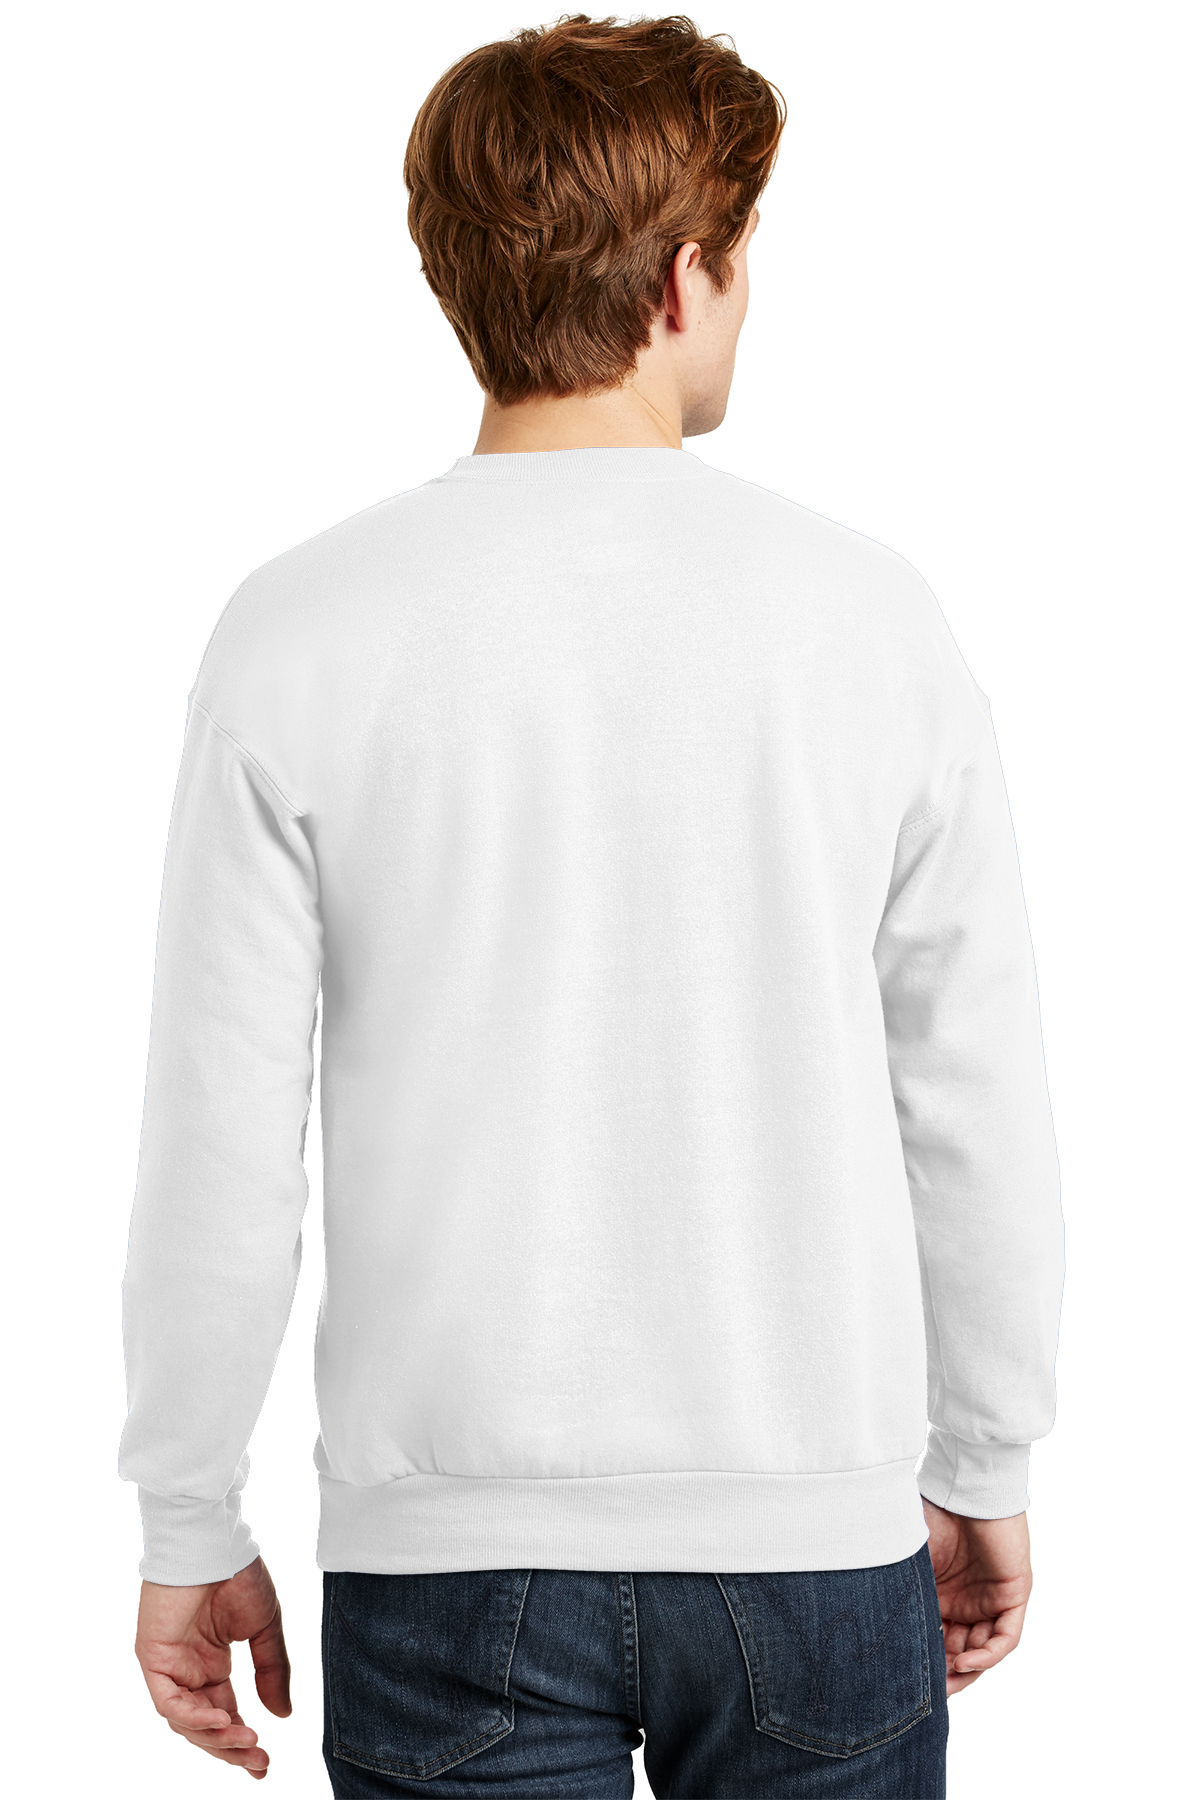 Hanes - EcoSmart Crewneck Sweatshirt | Product | SanMar